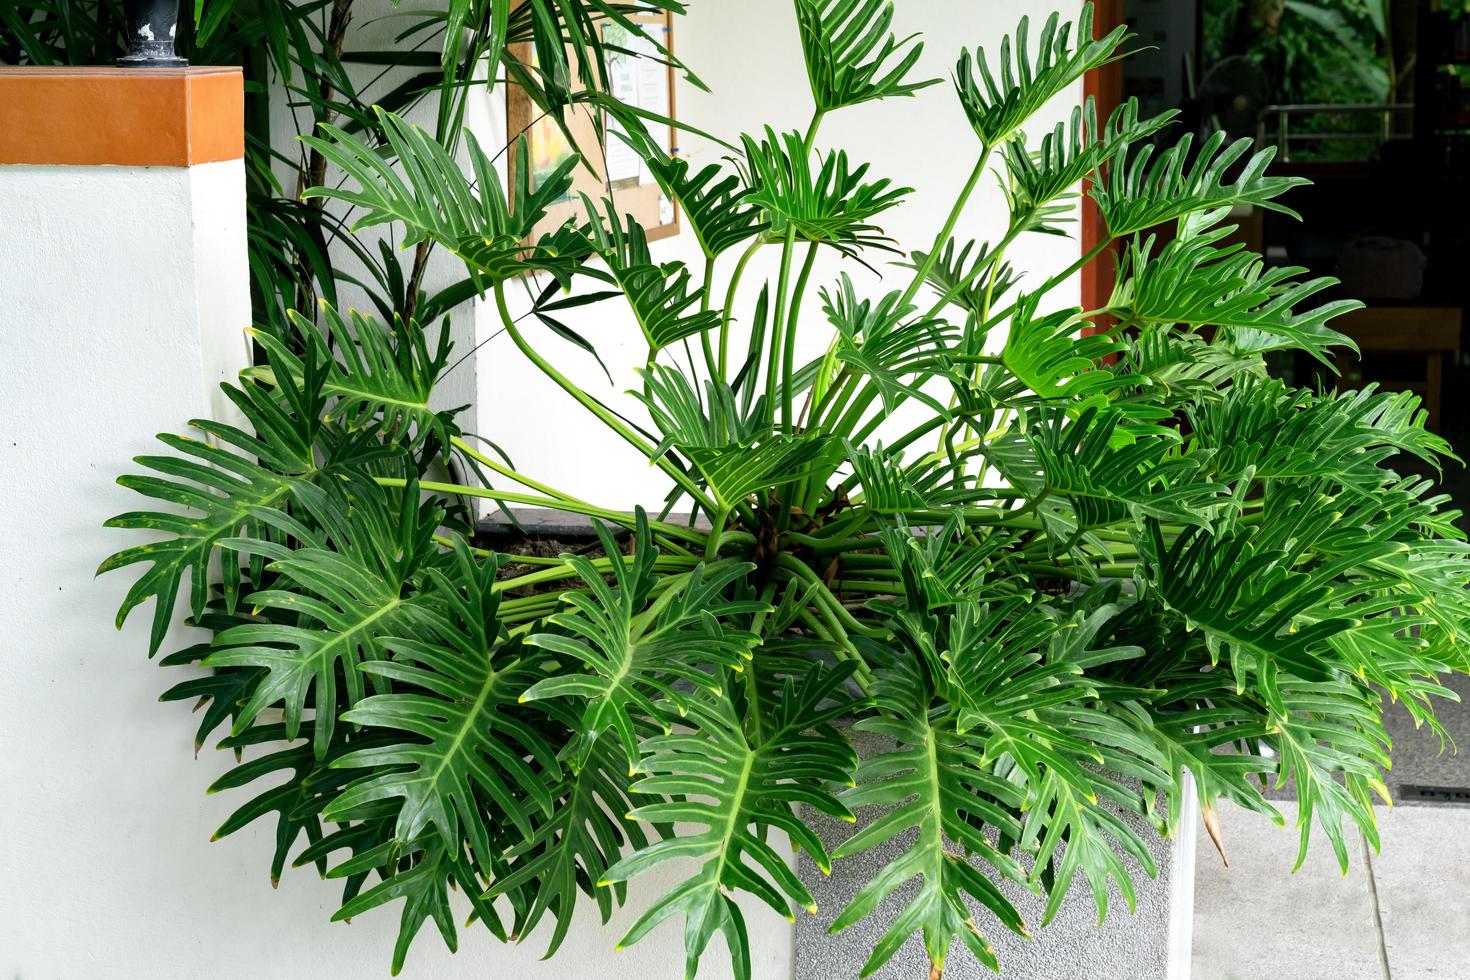 patrón de hojas verdes, hoja philodendron xanadu en el jardín foto